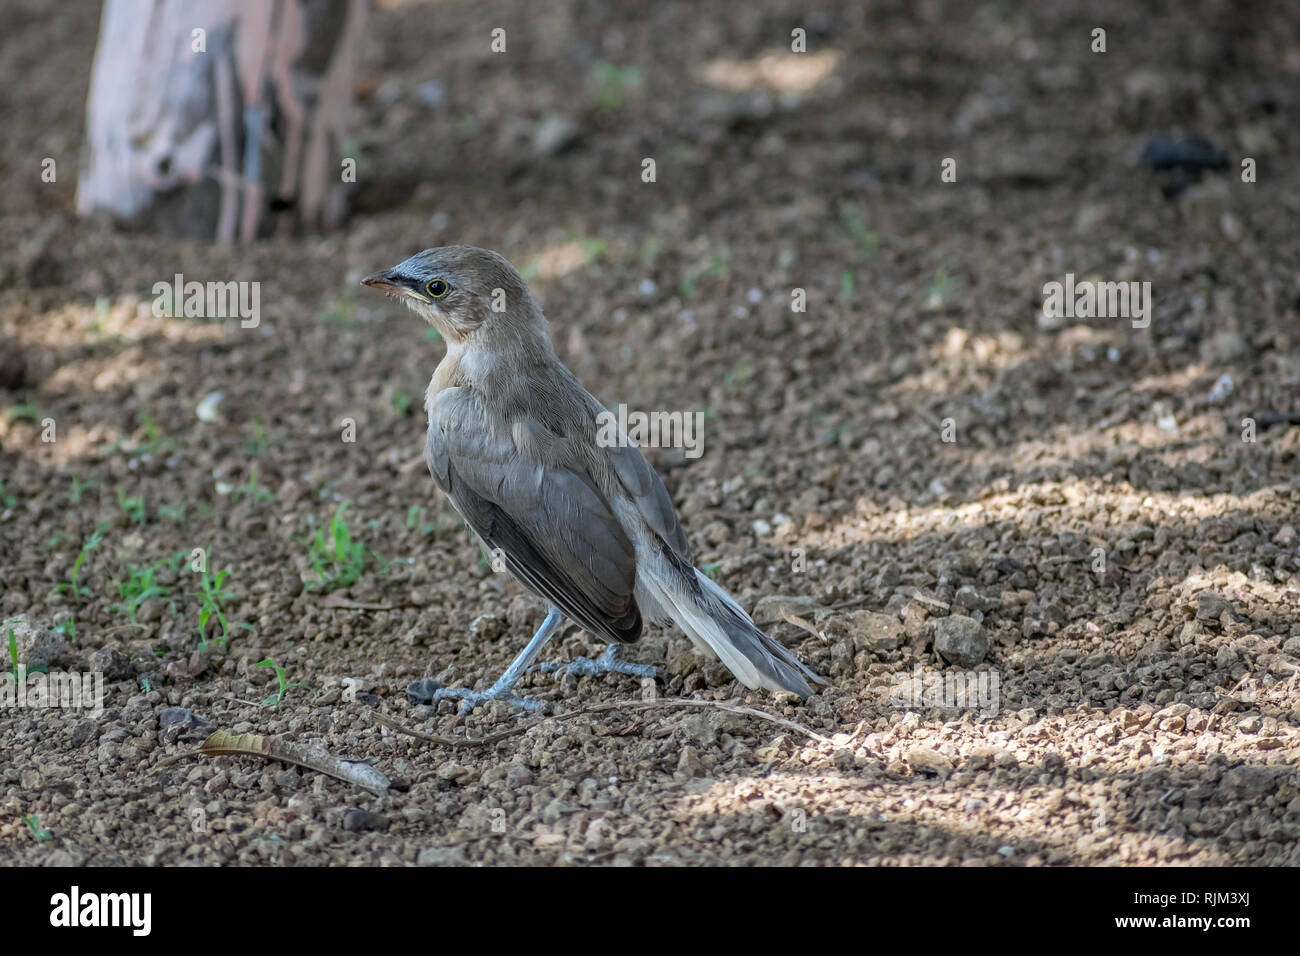 Long-tail-Sitzung, indische Robin oder Copsychus fulicatus ist eine Vogelart aus der Familie Muscicapidae. In Oll gir, Gujrat, Indien fotografiert. Stockfoto